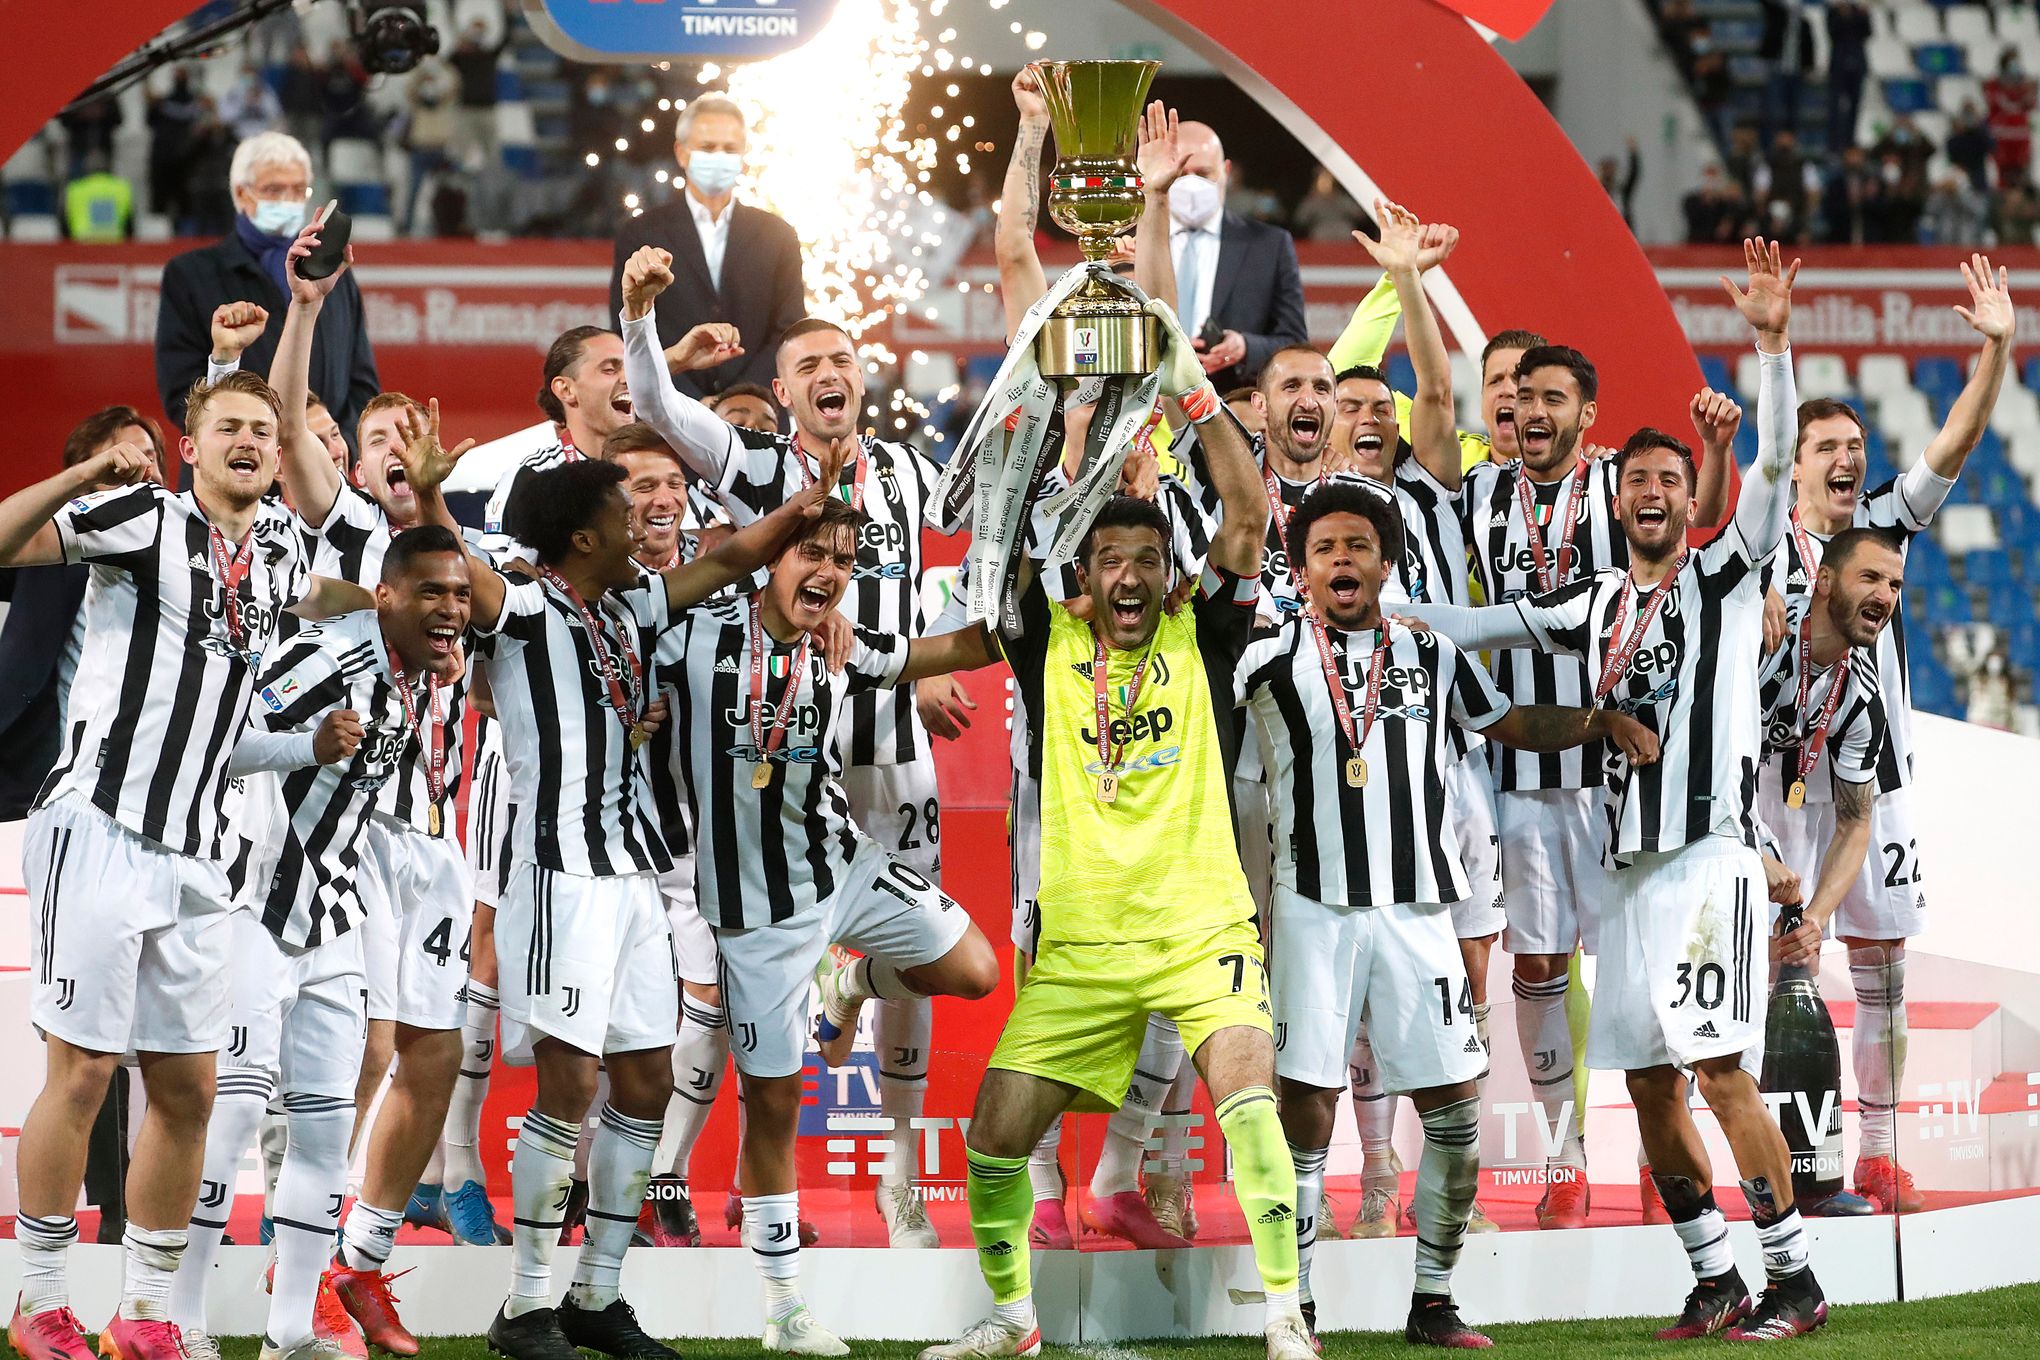 Juventus - Genoa  Coppa Italia 2020-2021 - 8th Finals - Juventus Men's  First Team